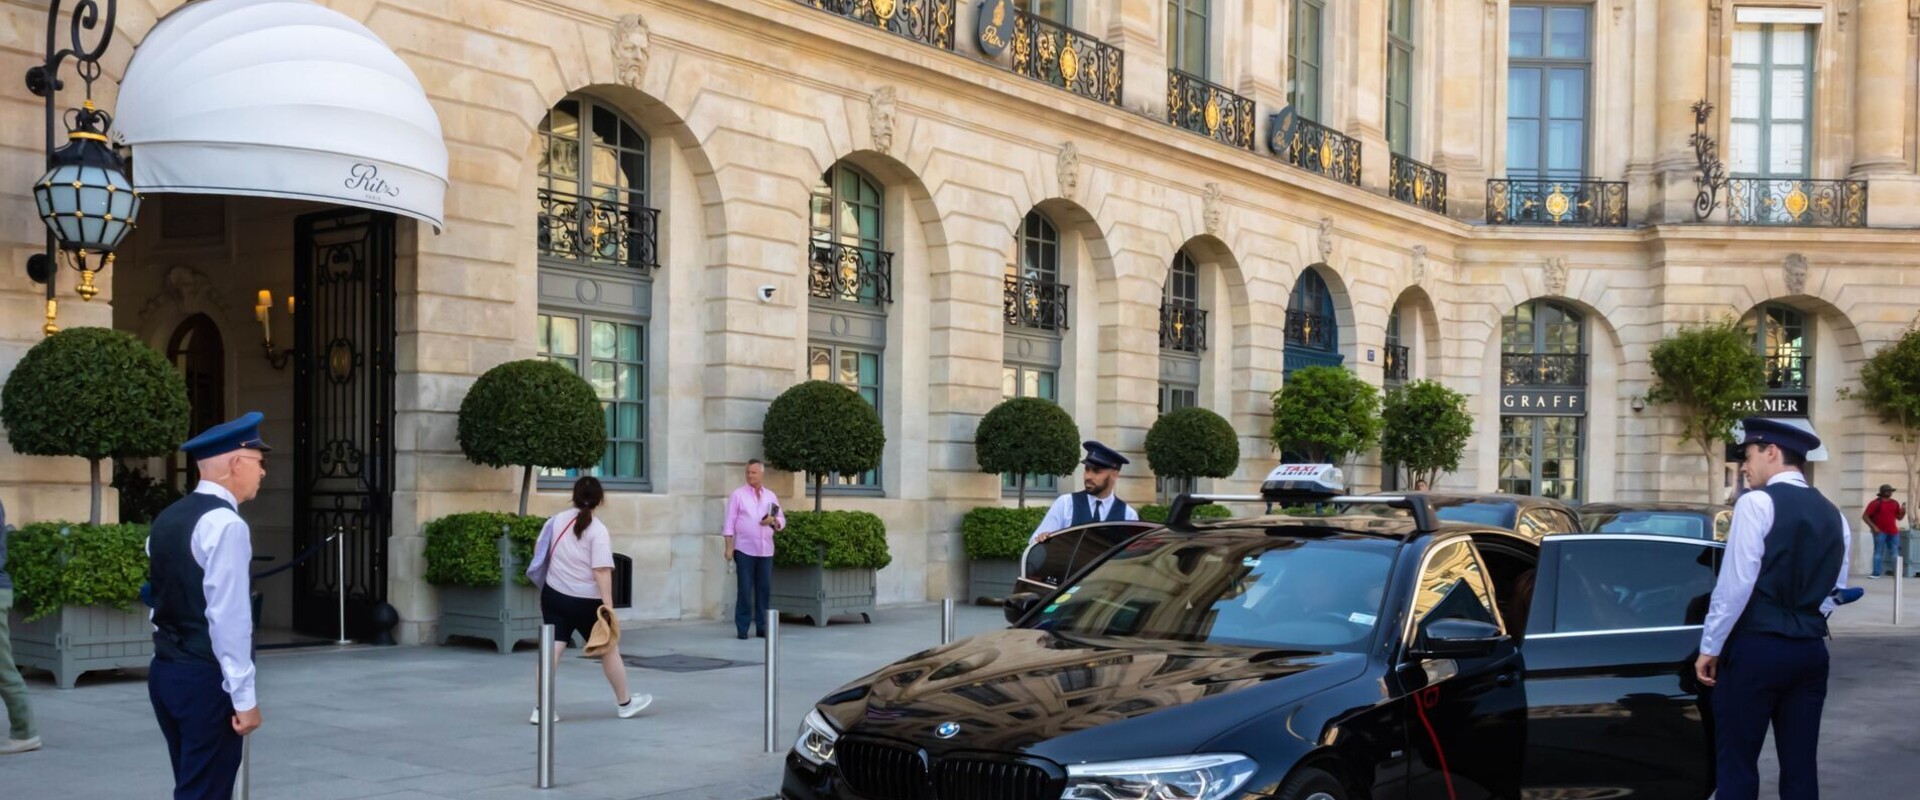 כניסה מלון ריץ פריז (צילום: Bada1, shutterstock)